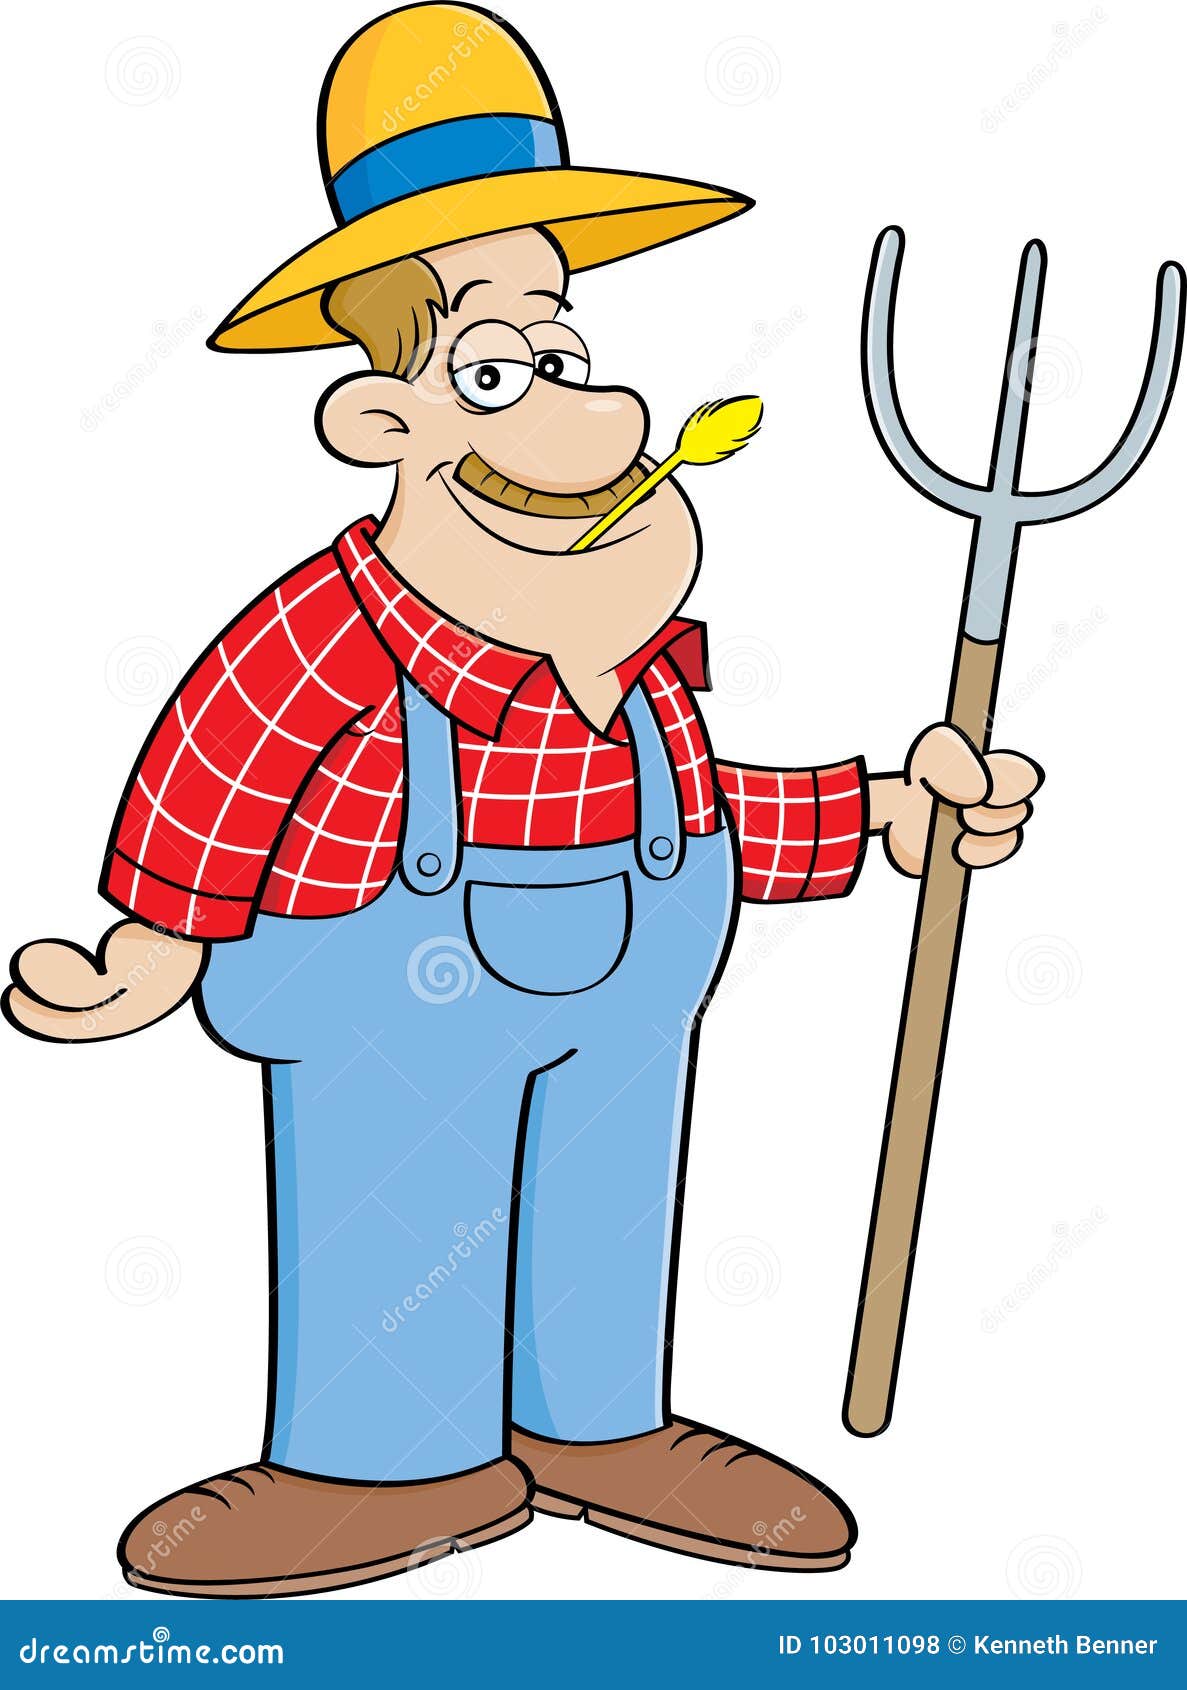 cartoon farmer holding a pitchfork.